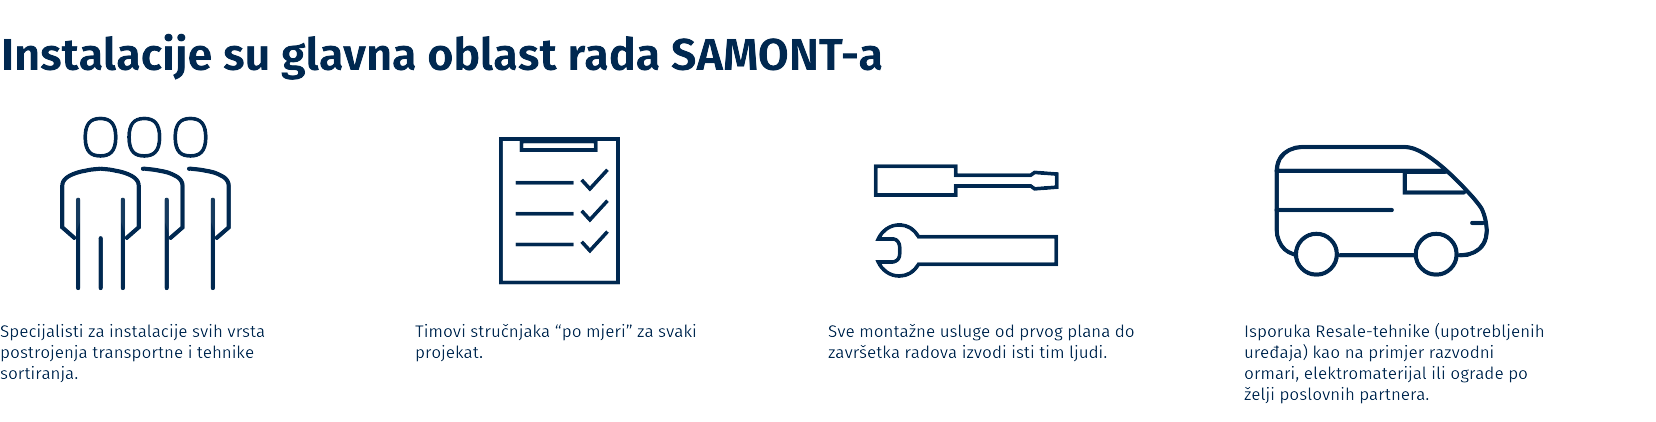 SAMONT_Installation_MNE